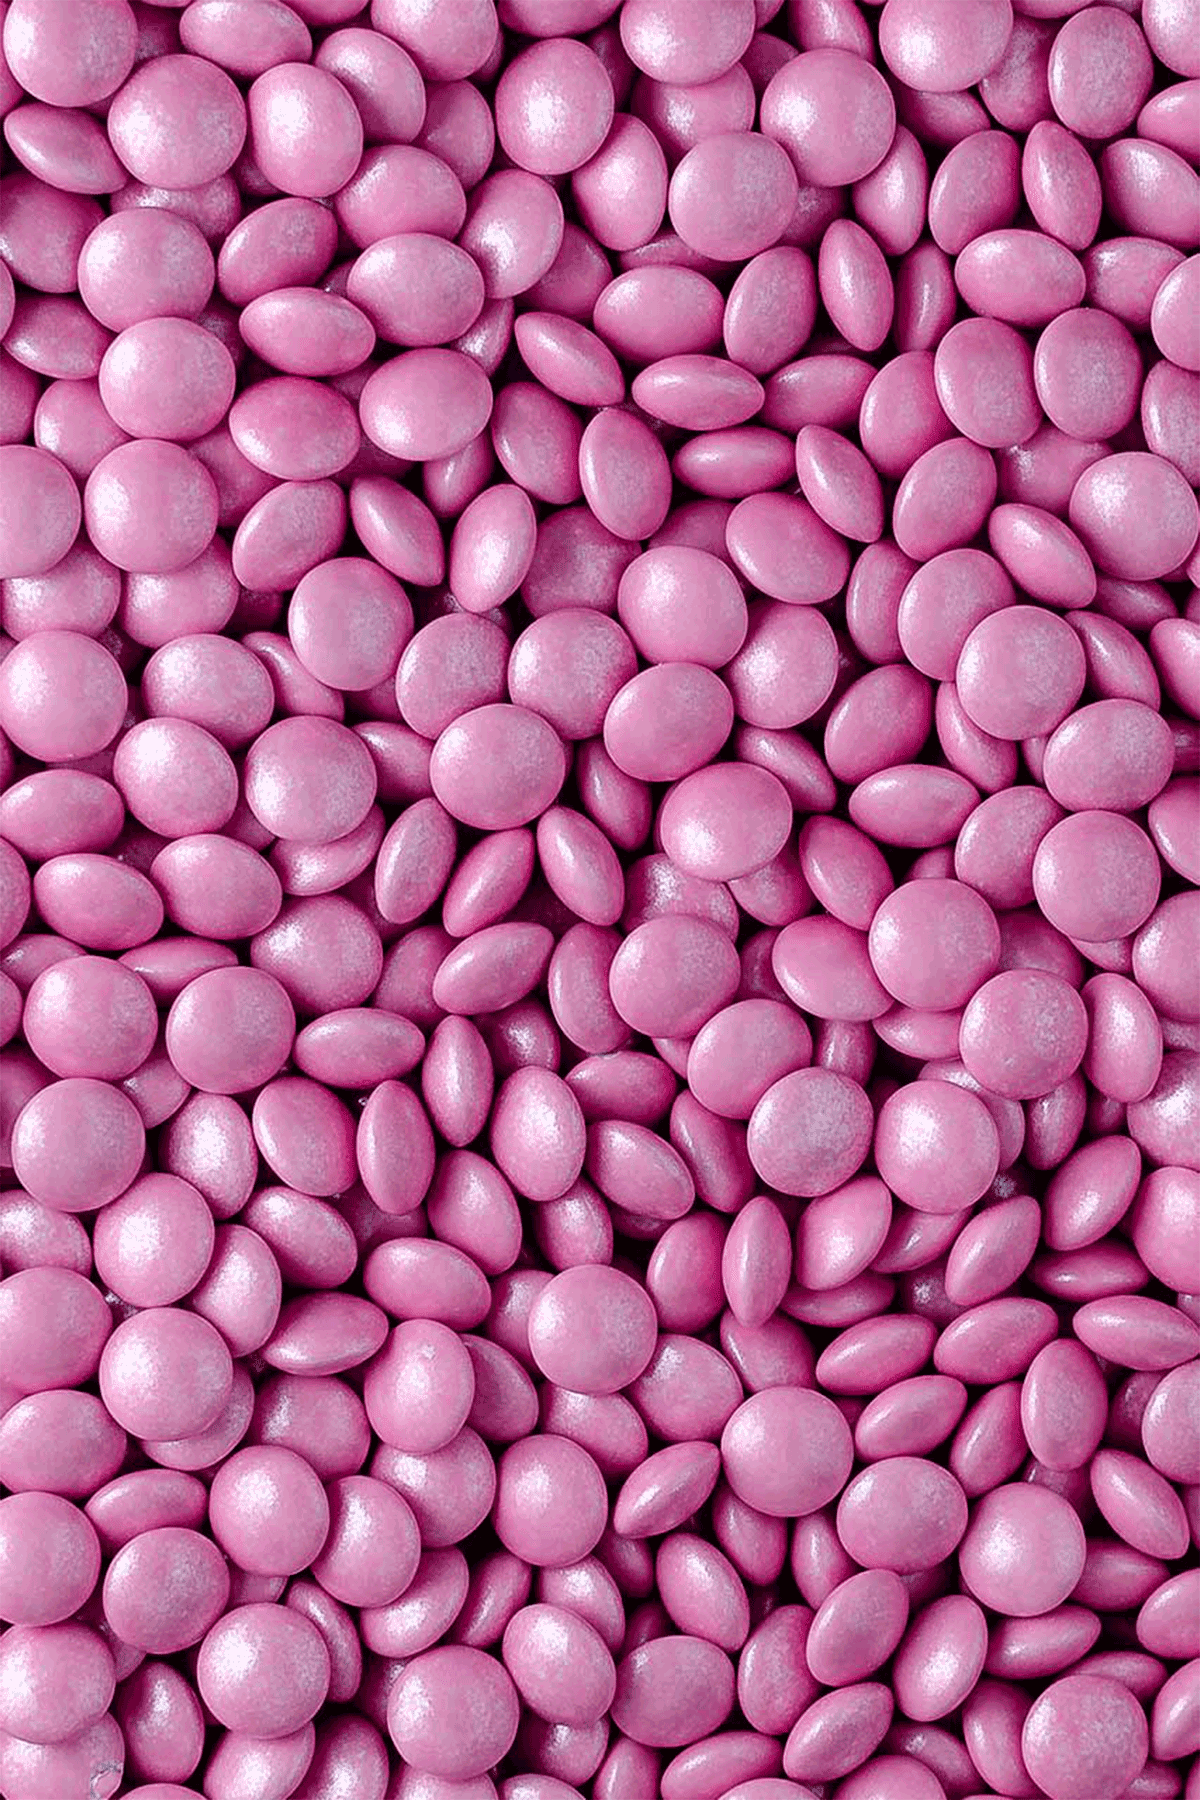 Mini Chocolate Beans - Baby Pink Sprinkles Sprinkly 